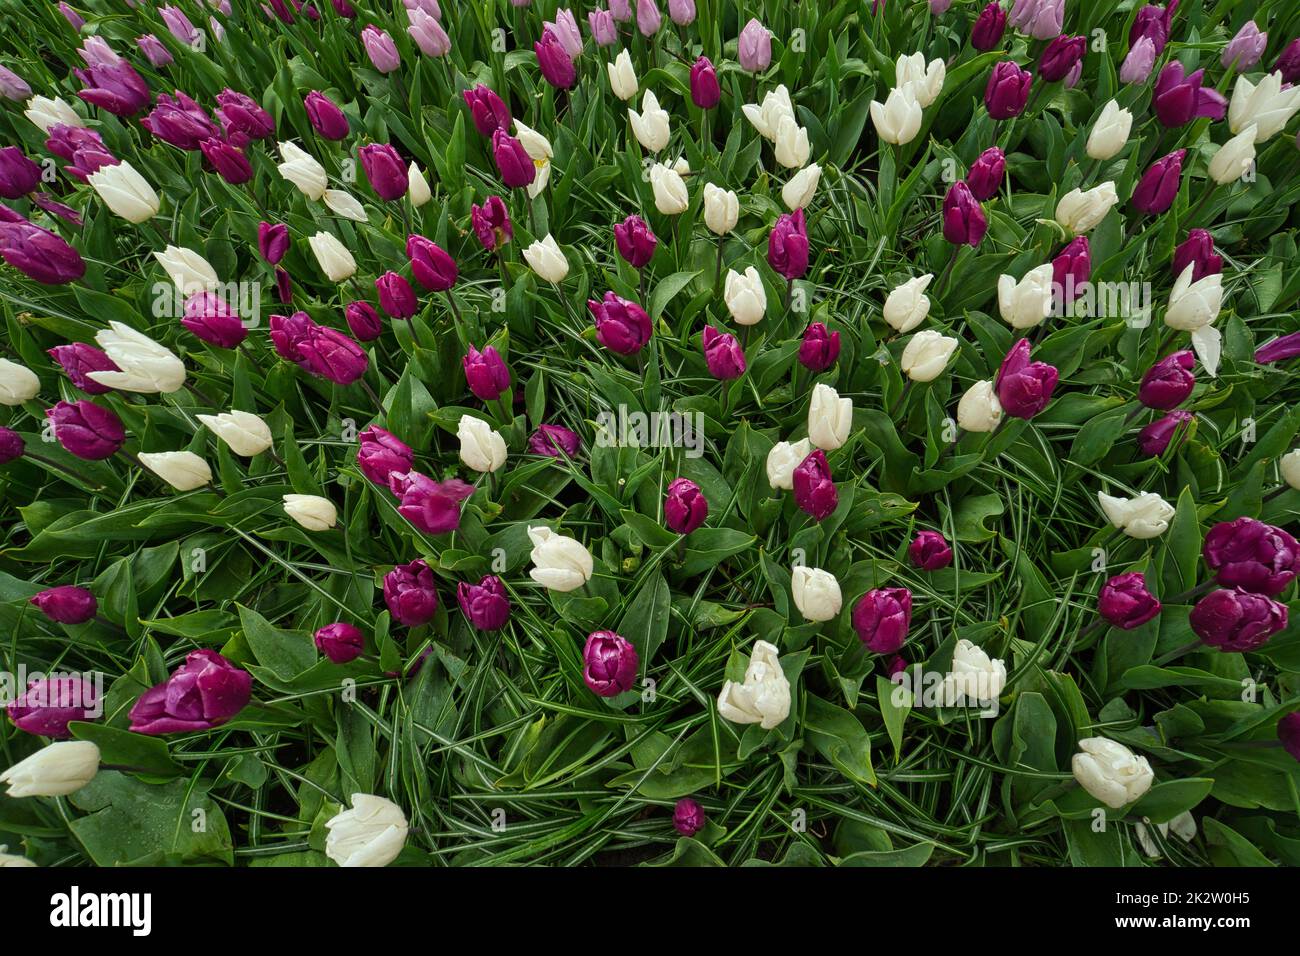 Tulipes en blanc et violet juste avant la floraison Banque D'Images